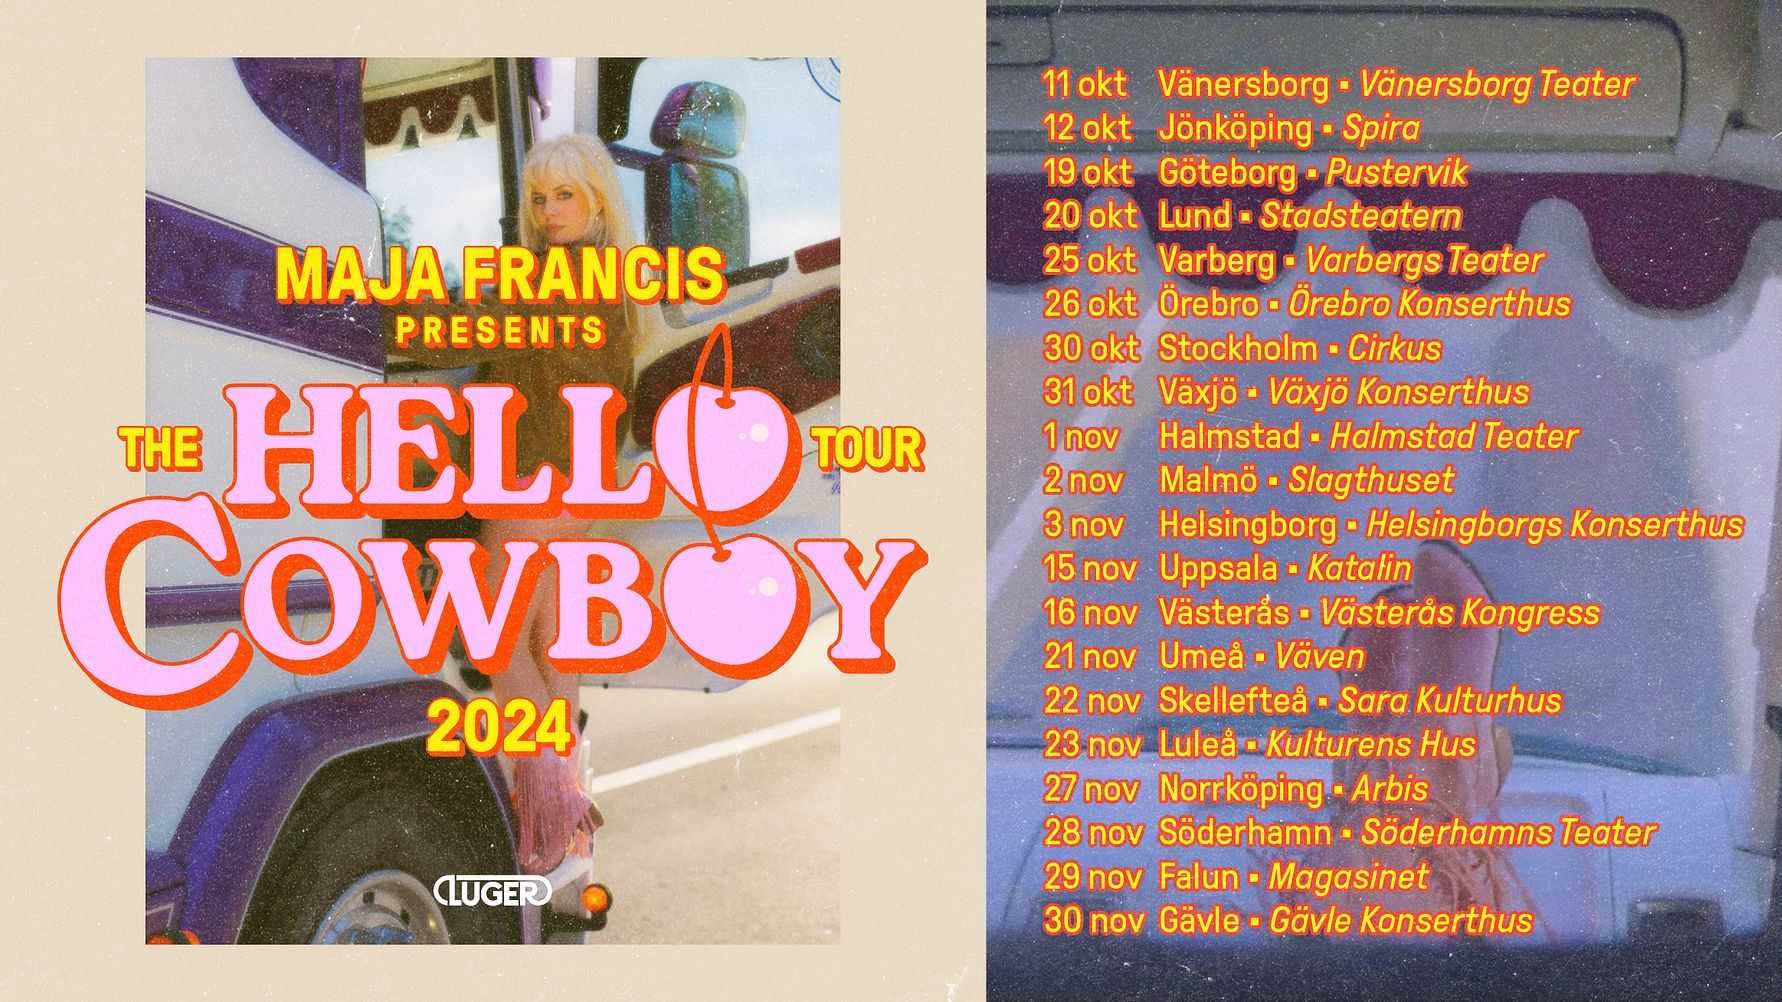 Maja Francis hittar hem till countryns Nashville med nytt album och ”Hello Cowboy Tour 2024” i höst